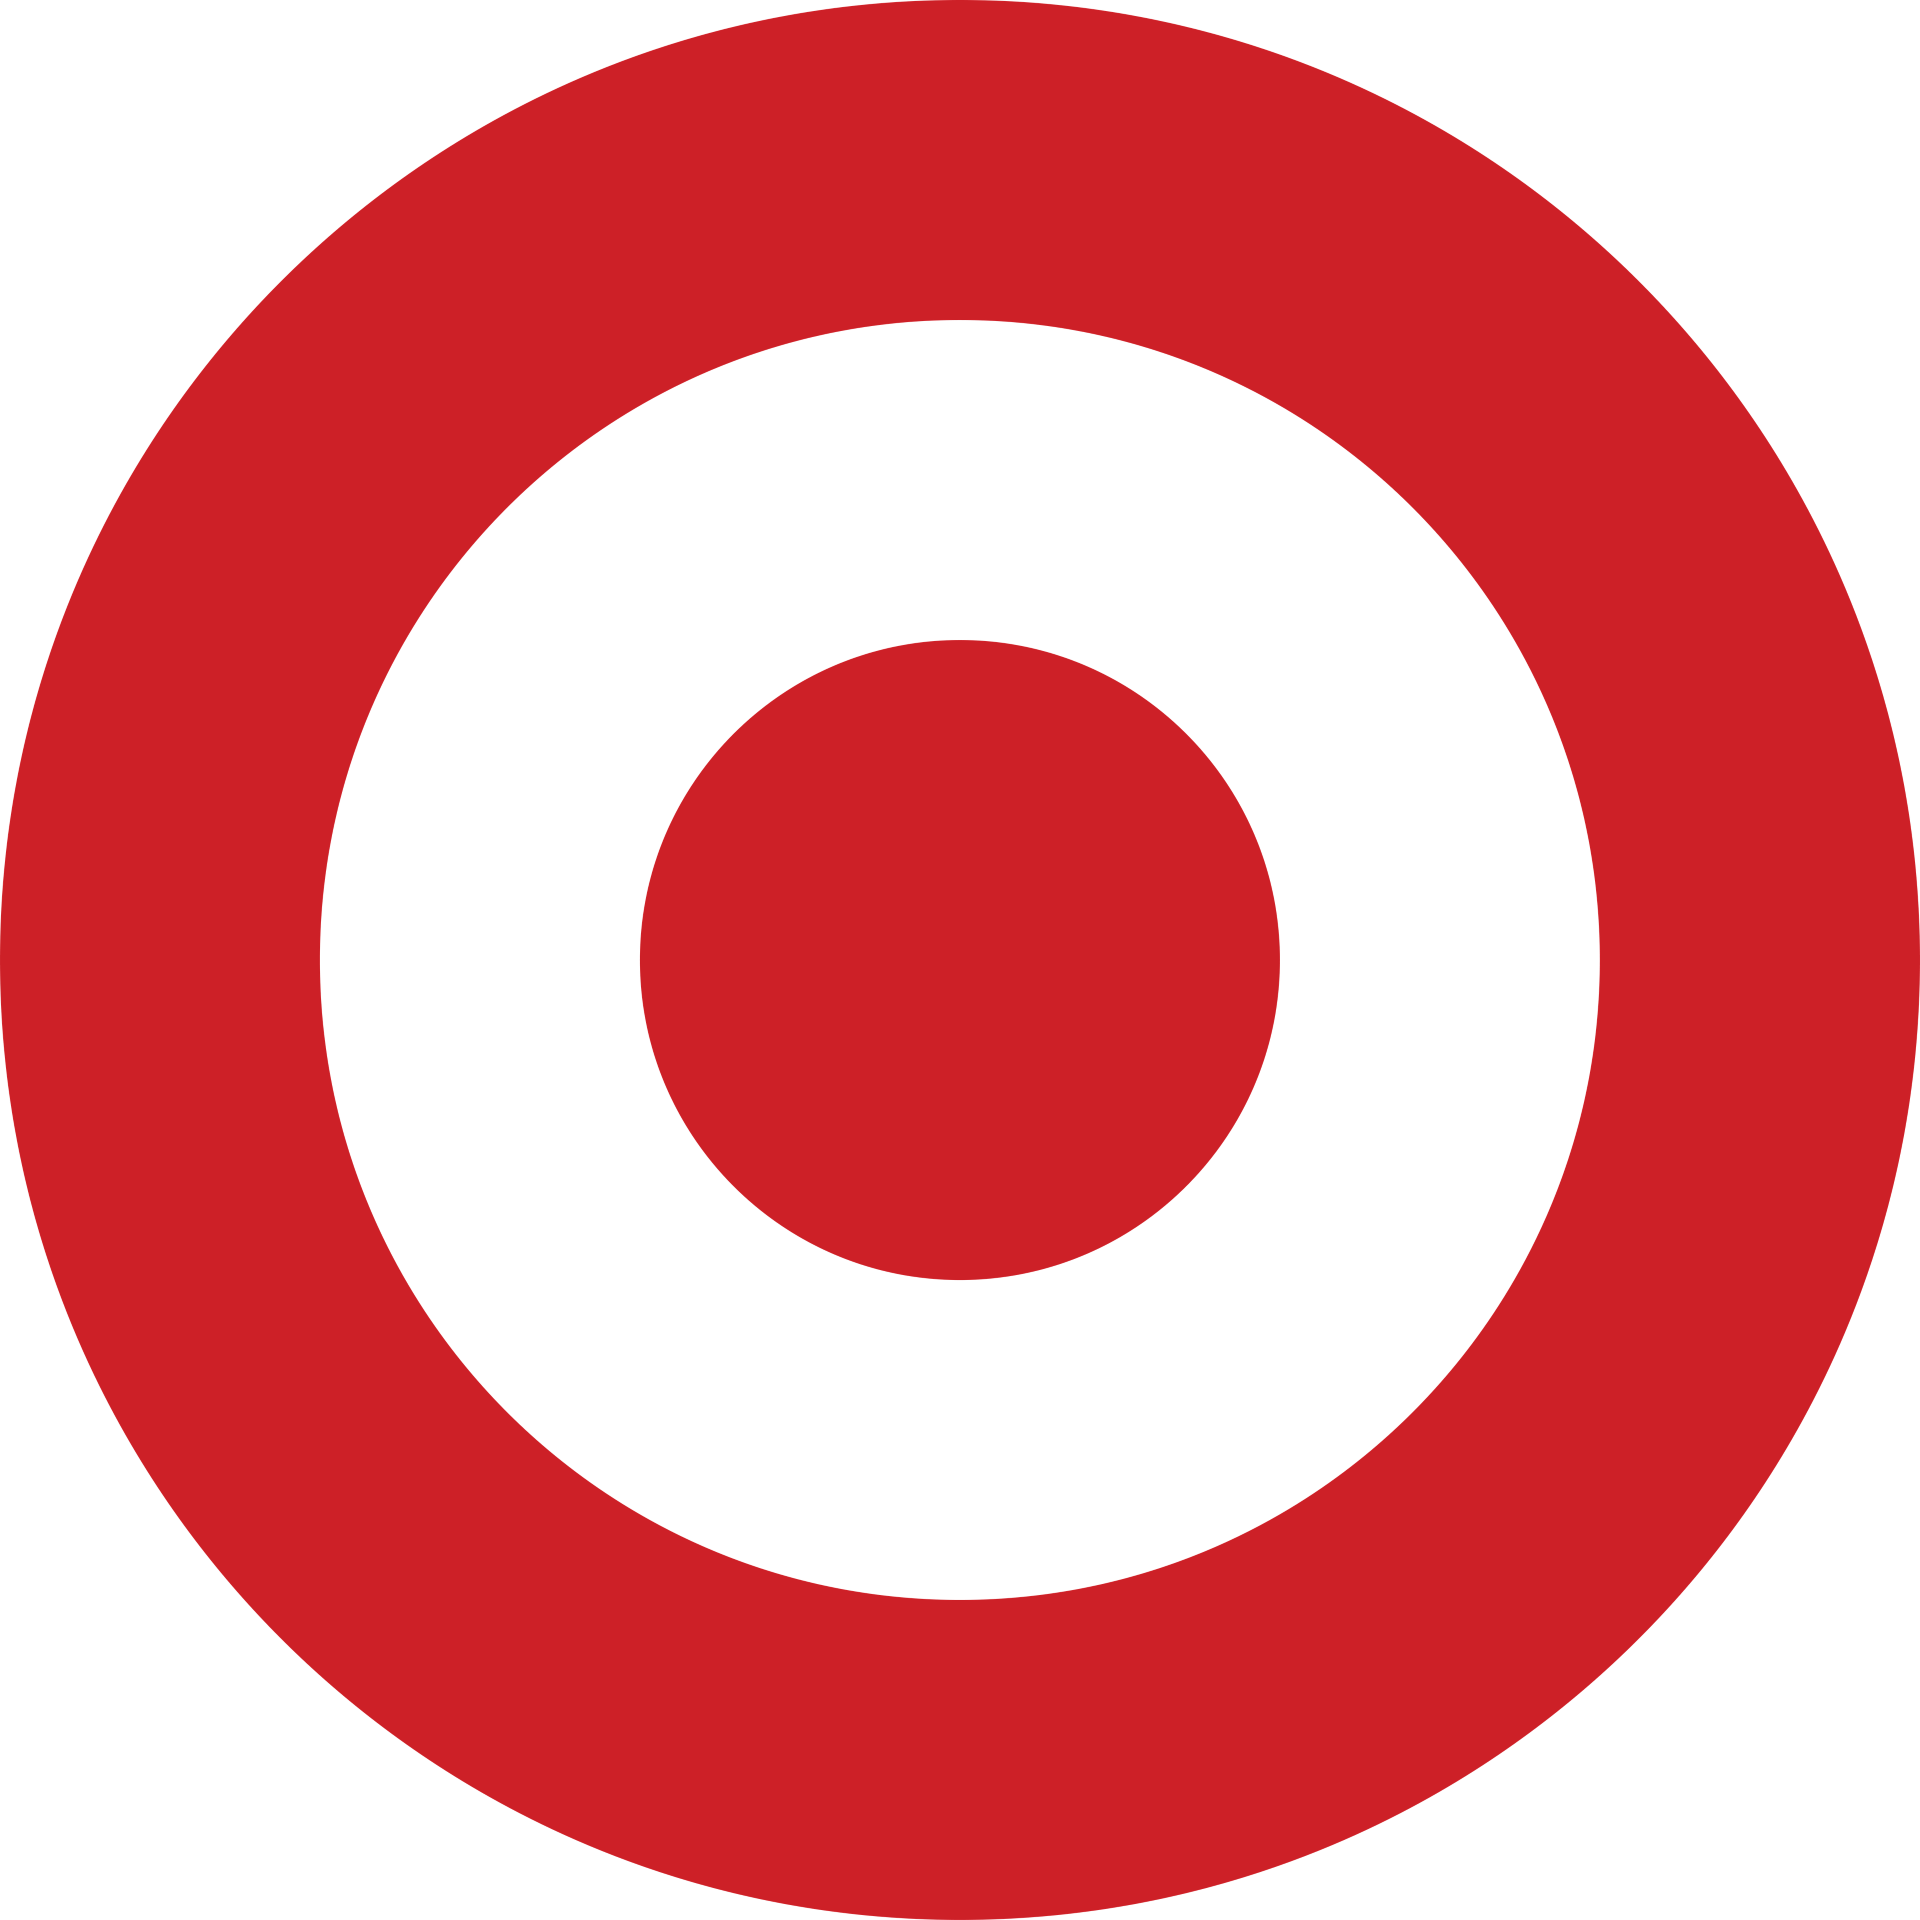 Thumbnail target bullseye logo red transparent